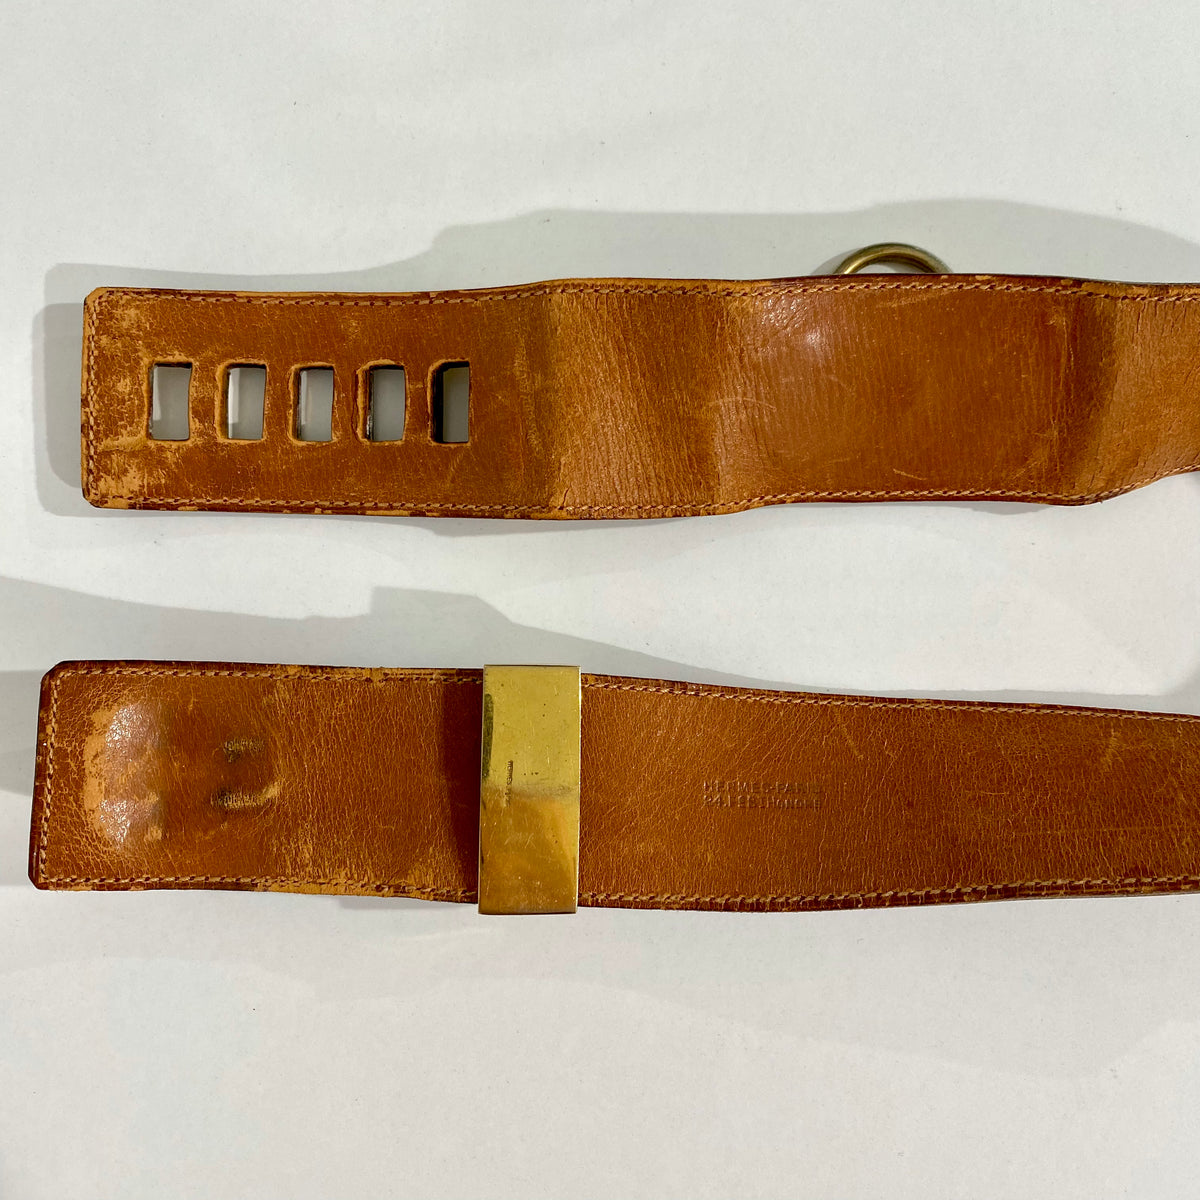 Sold at Auction: Hermès, Hermès - Collier de Chien leather belt